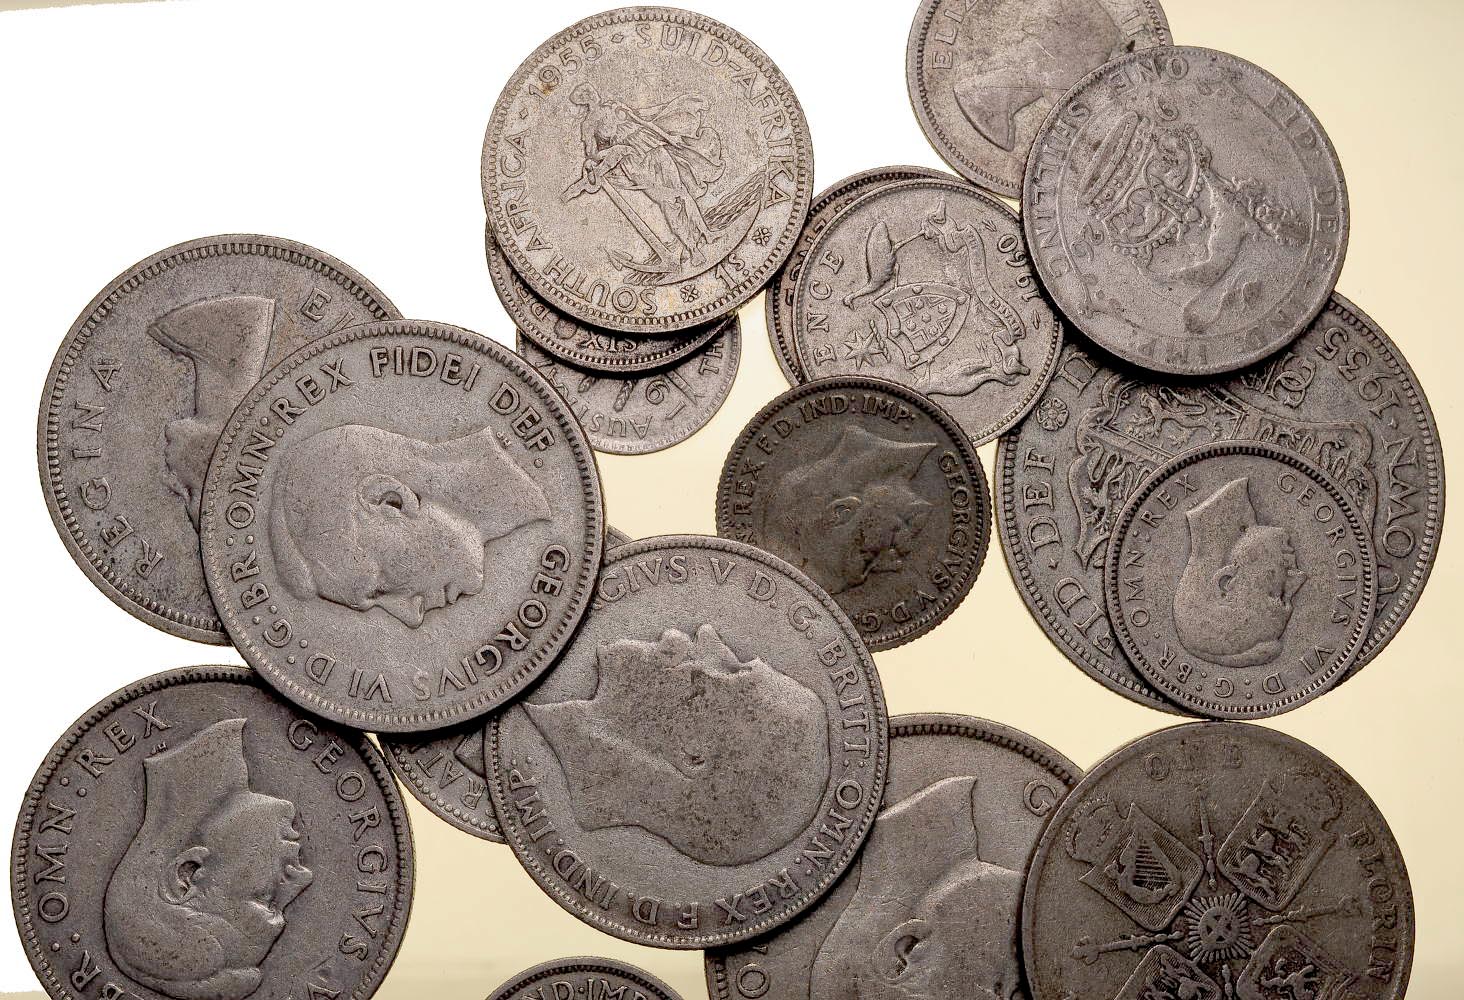 Anglia, rózne monety, srebro, 2 uncje czystego srebra, junk silver